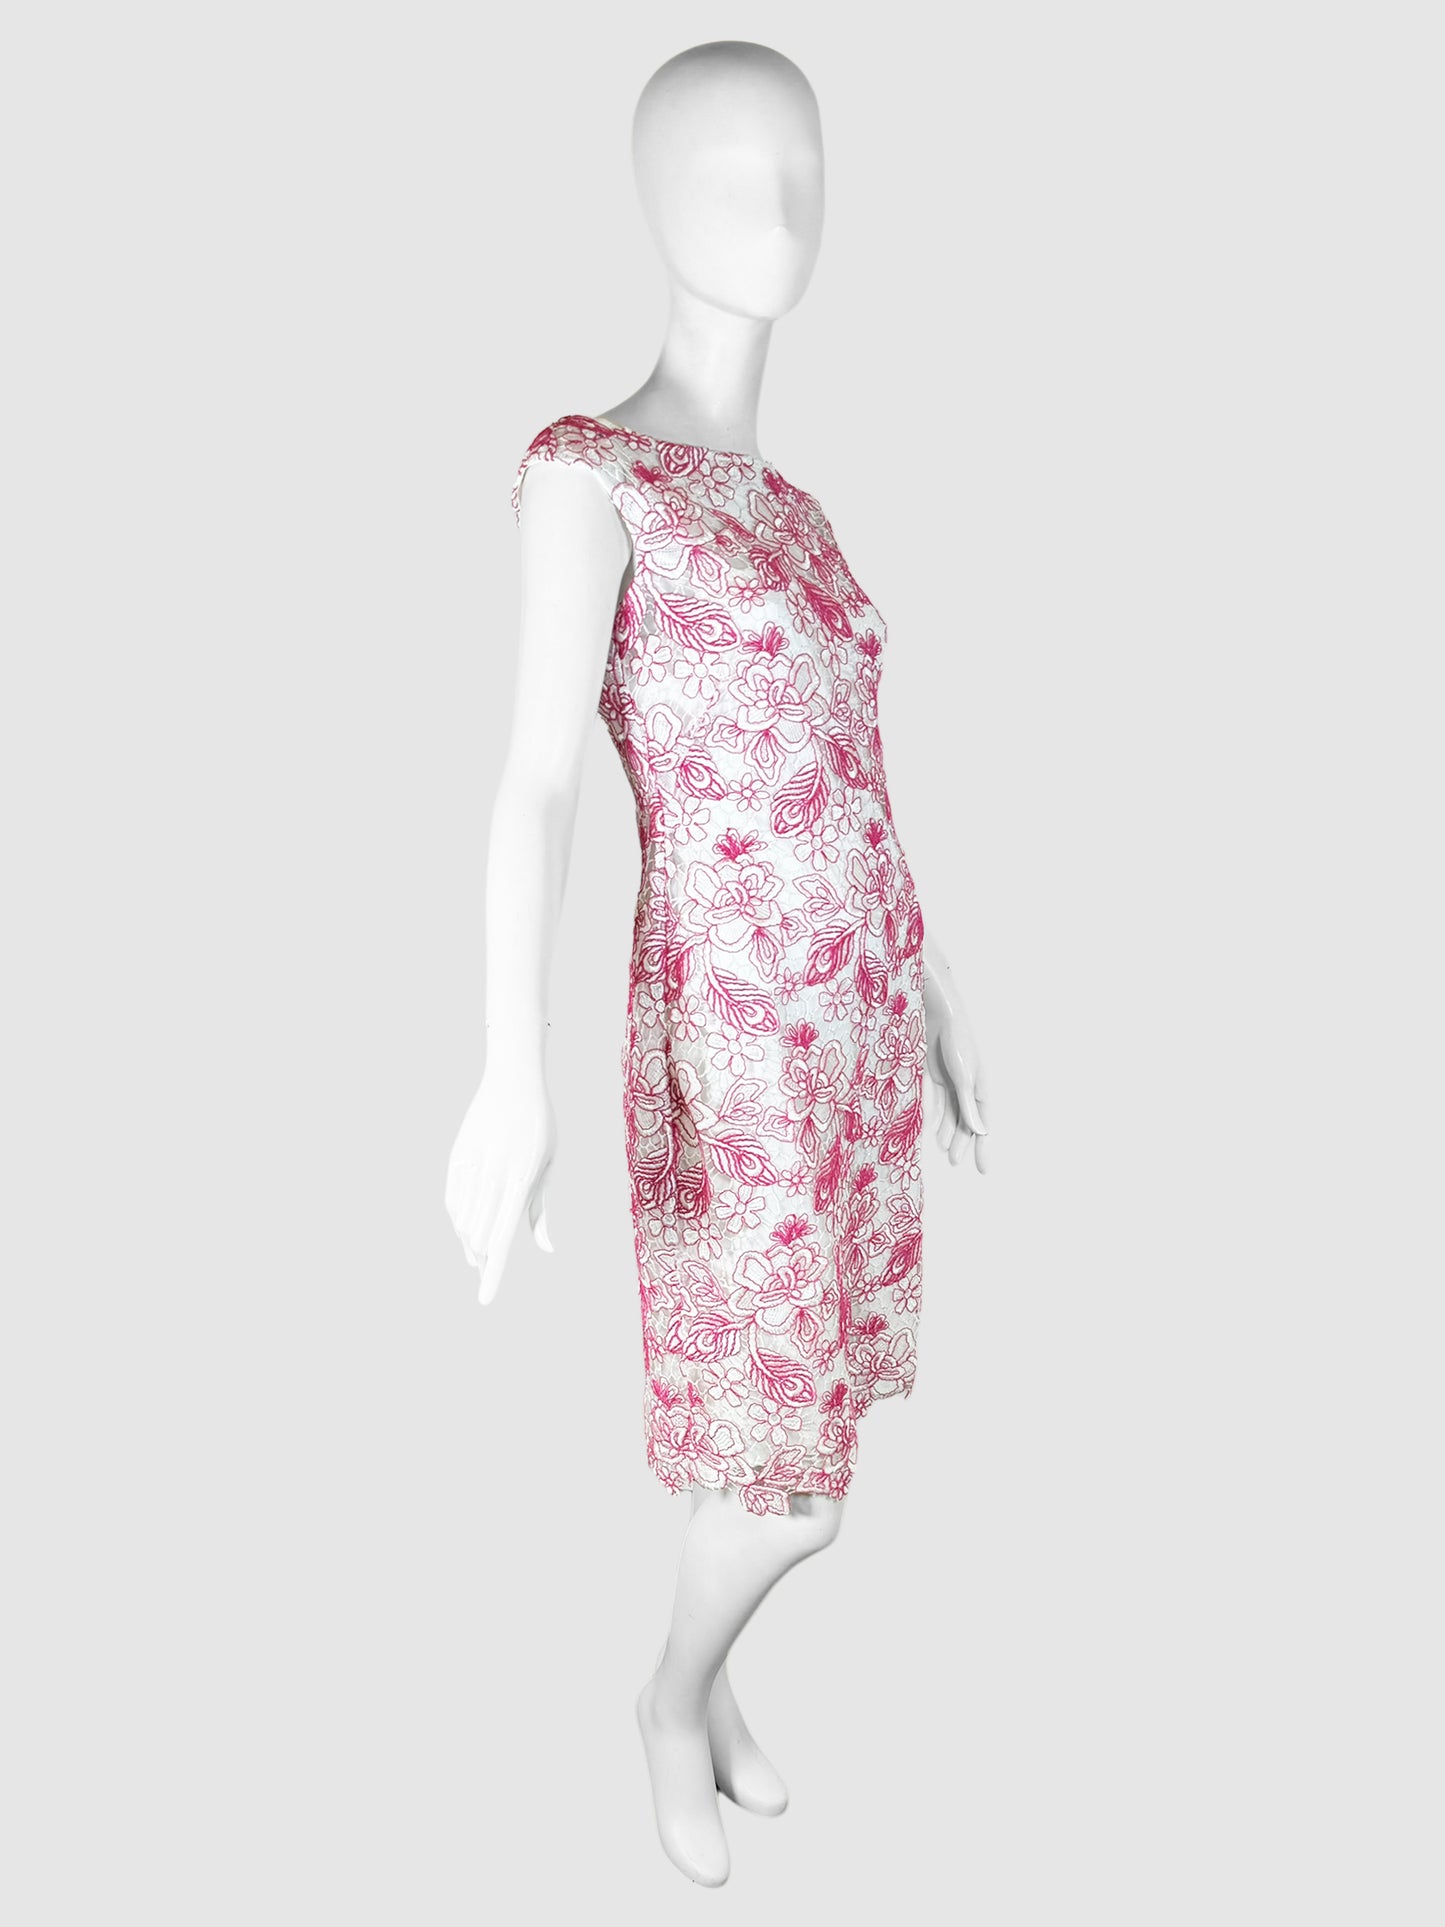 Floral Lace Shift Dress - Size 8